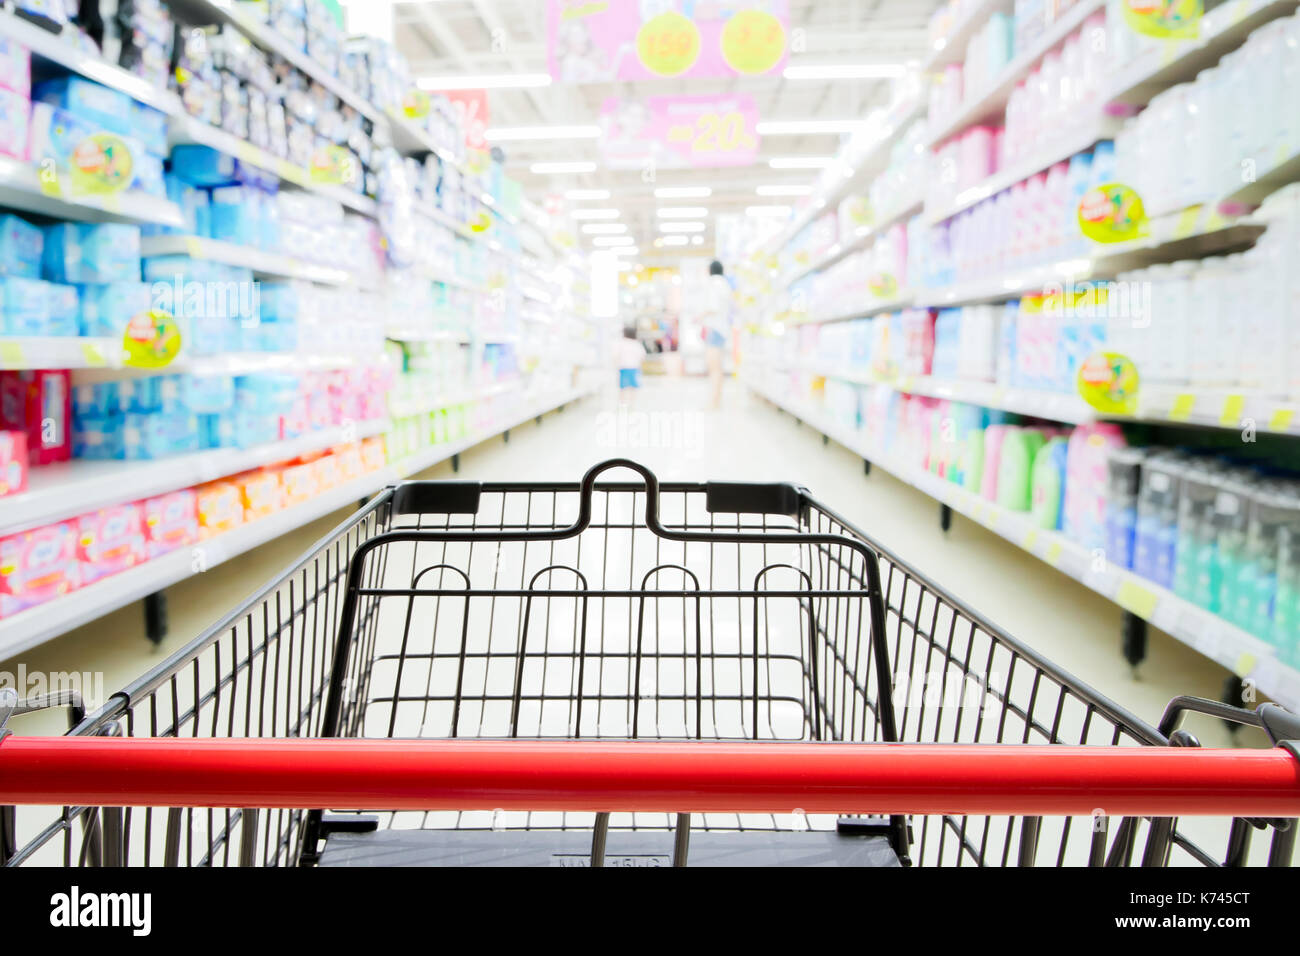 Einkaufswagen im Supermarkt mit blured Supermarkt gang und Regale Hintergrund Stockfoto